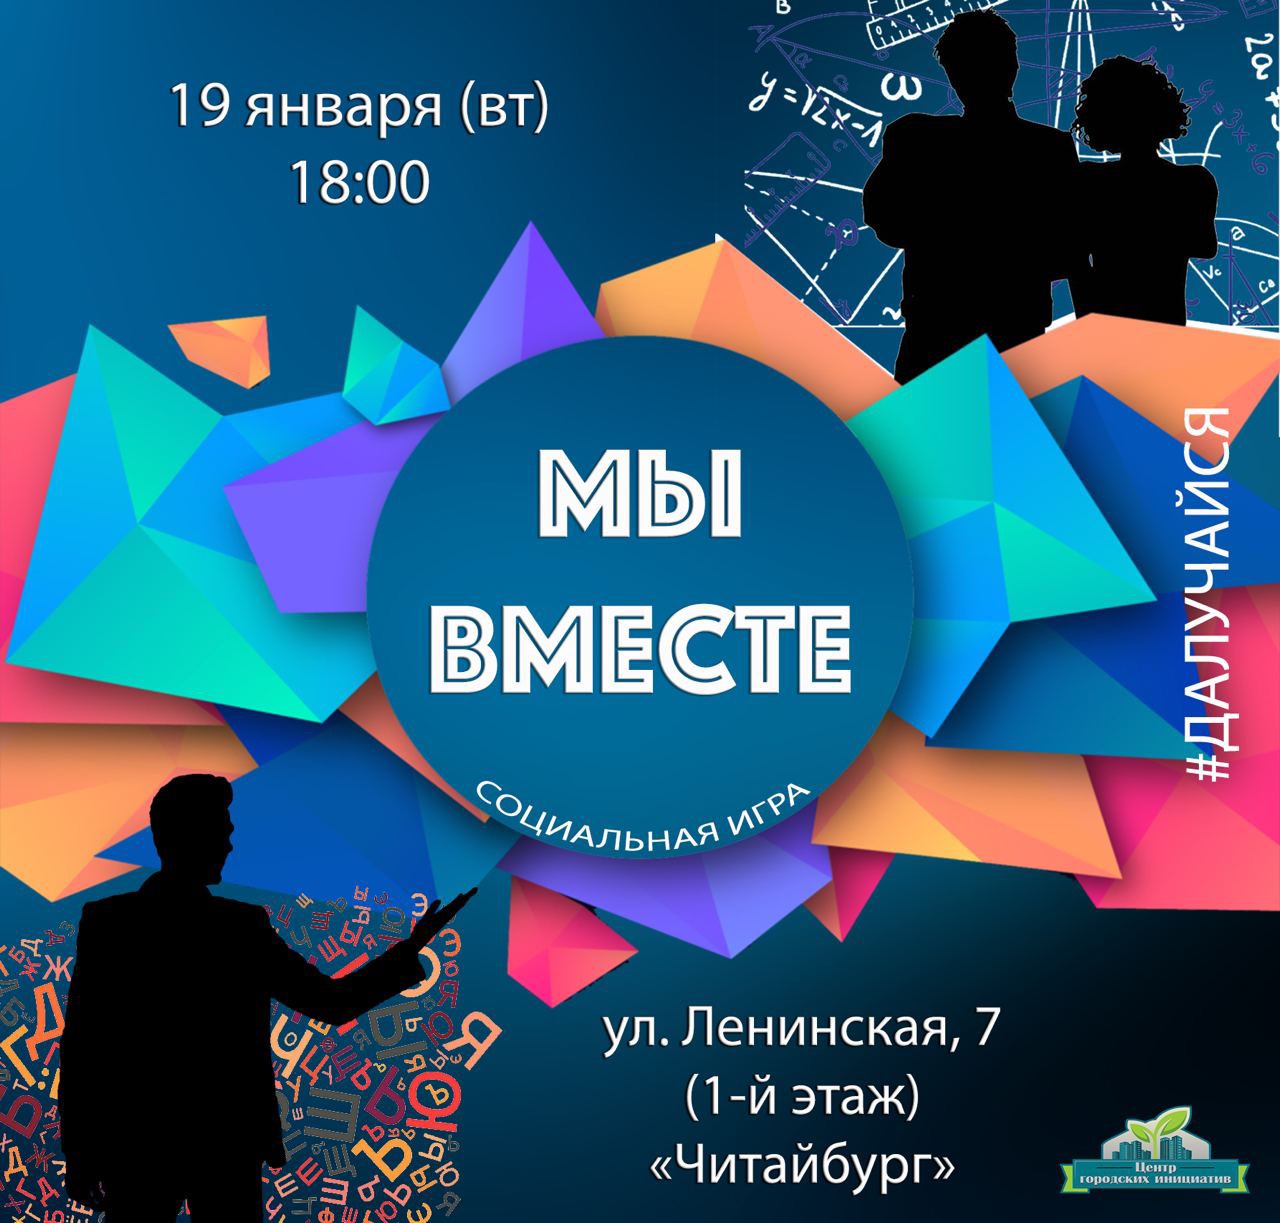 «Гуманитарии» или «технари»: вторая социальная игра «Мы вместе» пройдет в Могилеве 19 января